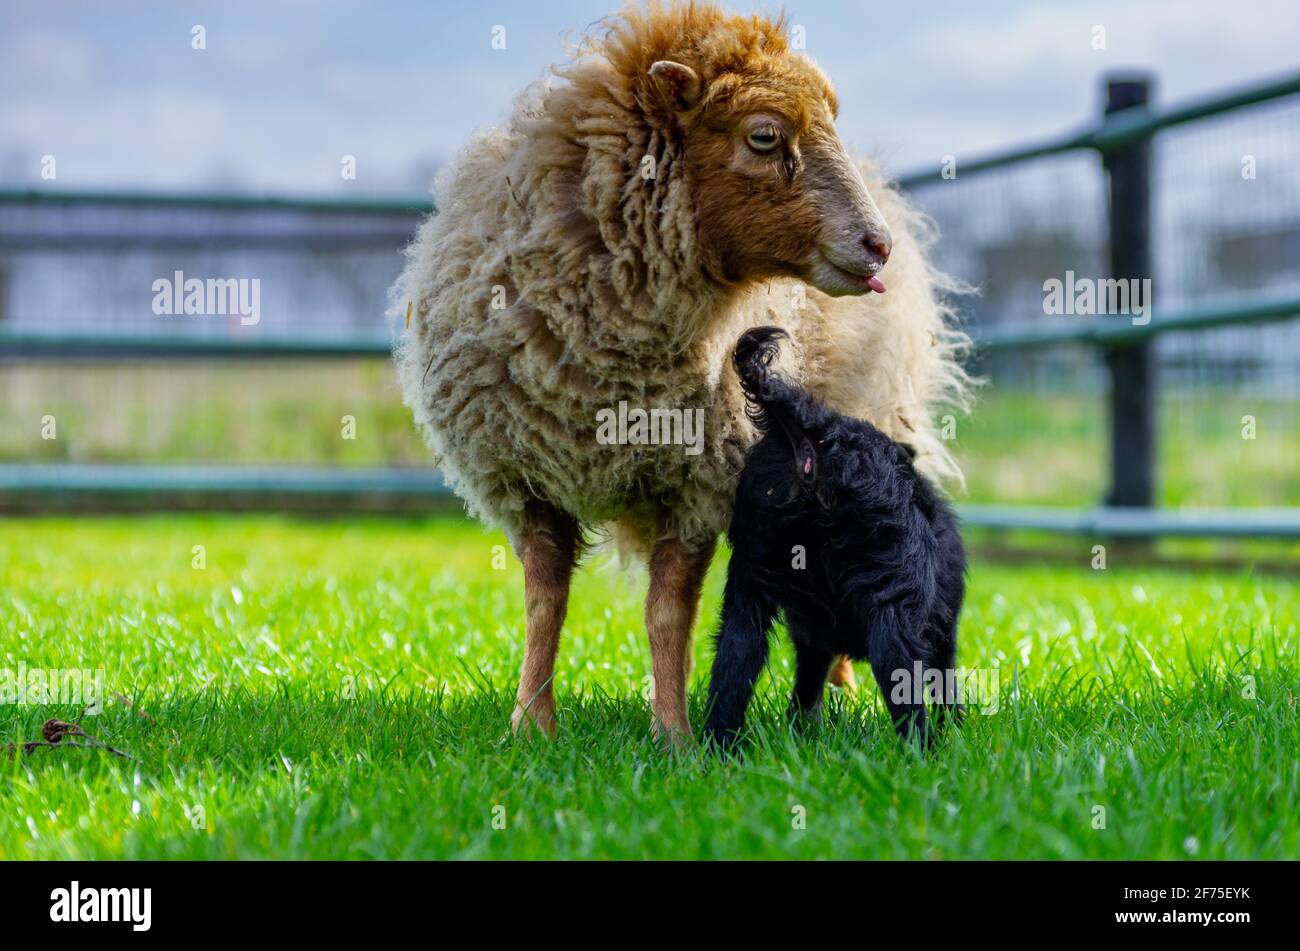 Mère blonde mouton Ouessant avec agneau noir. Agneau boit du lait de sa mère. Heure du printemps Banque D'Images